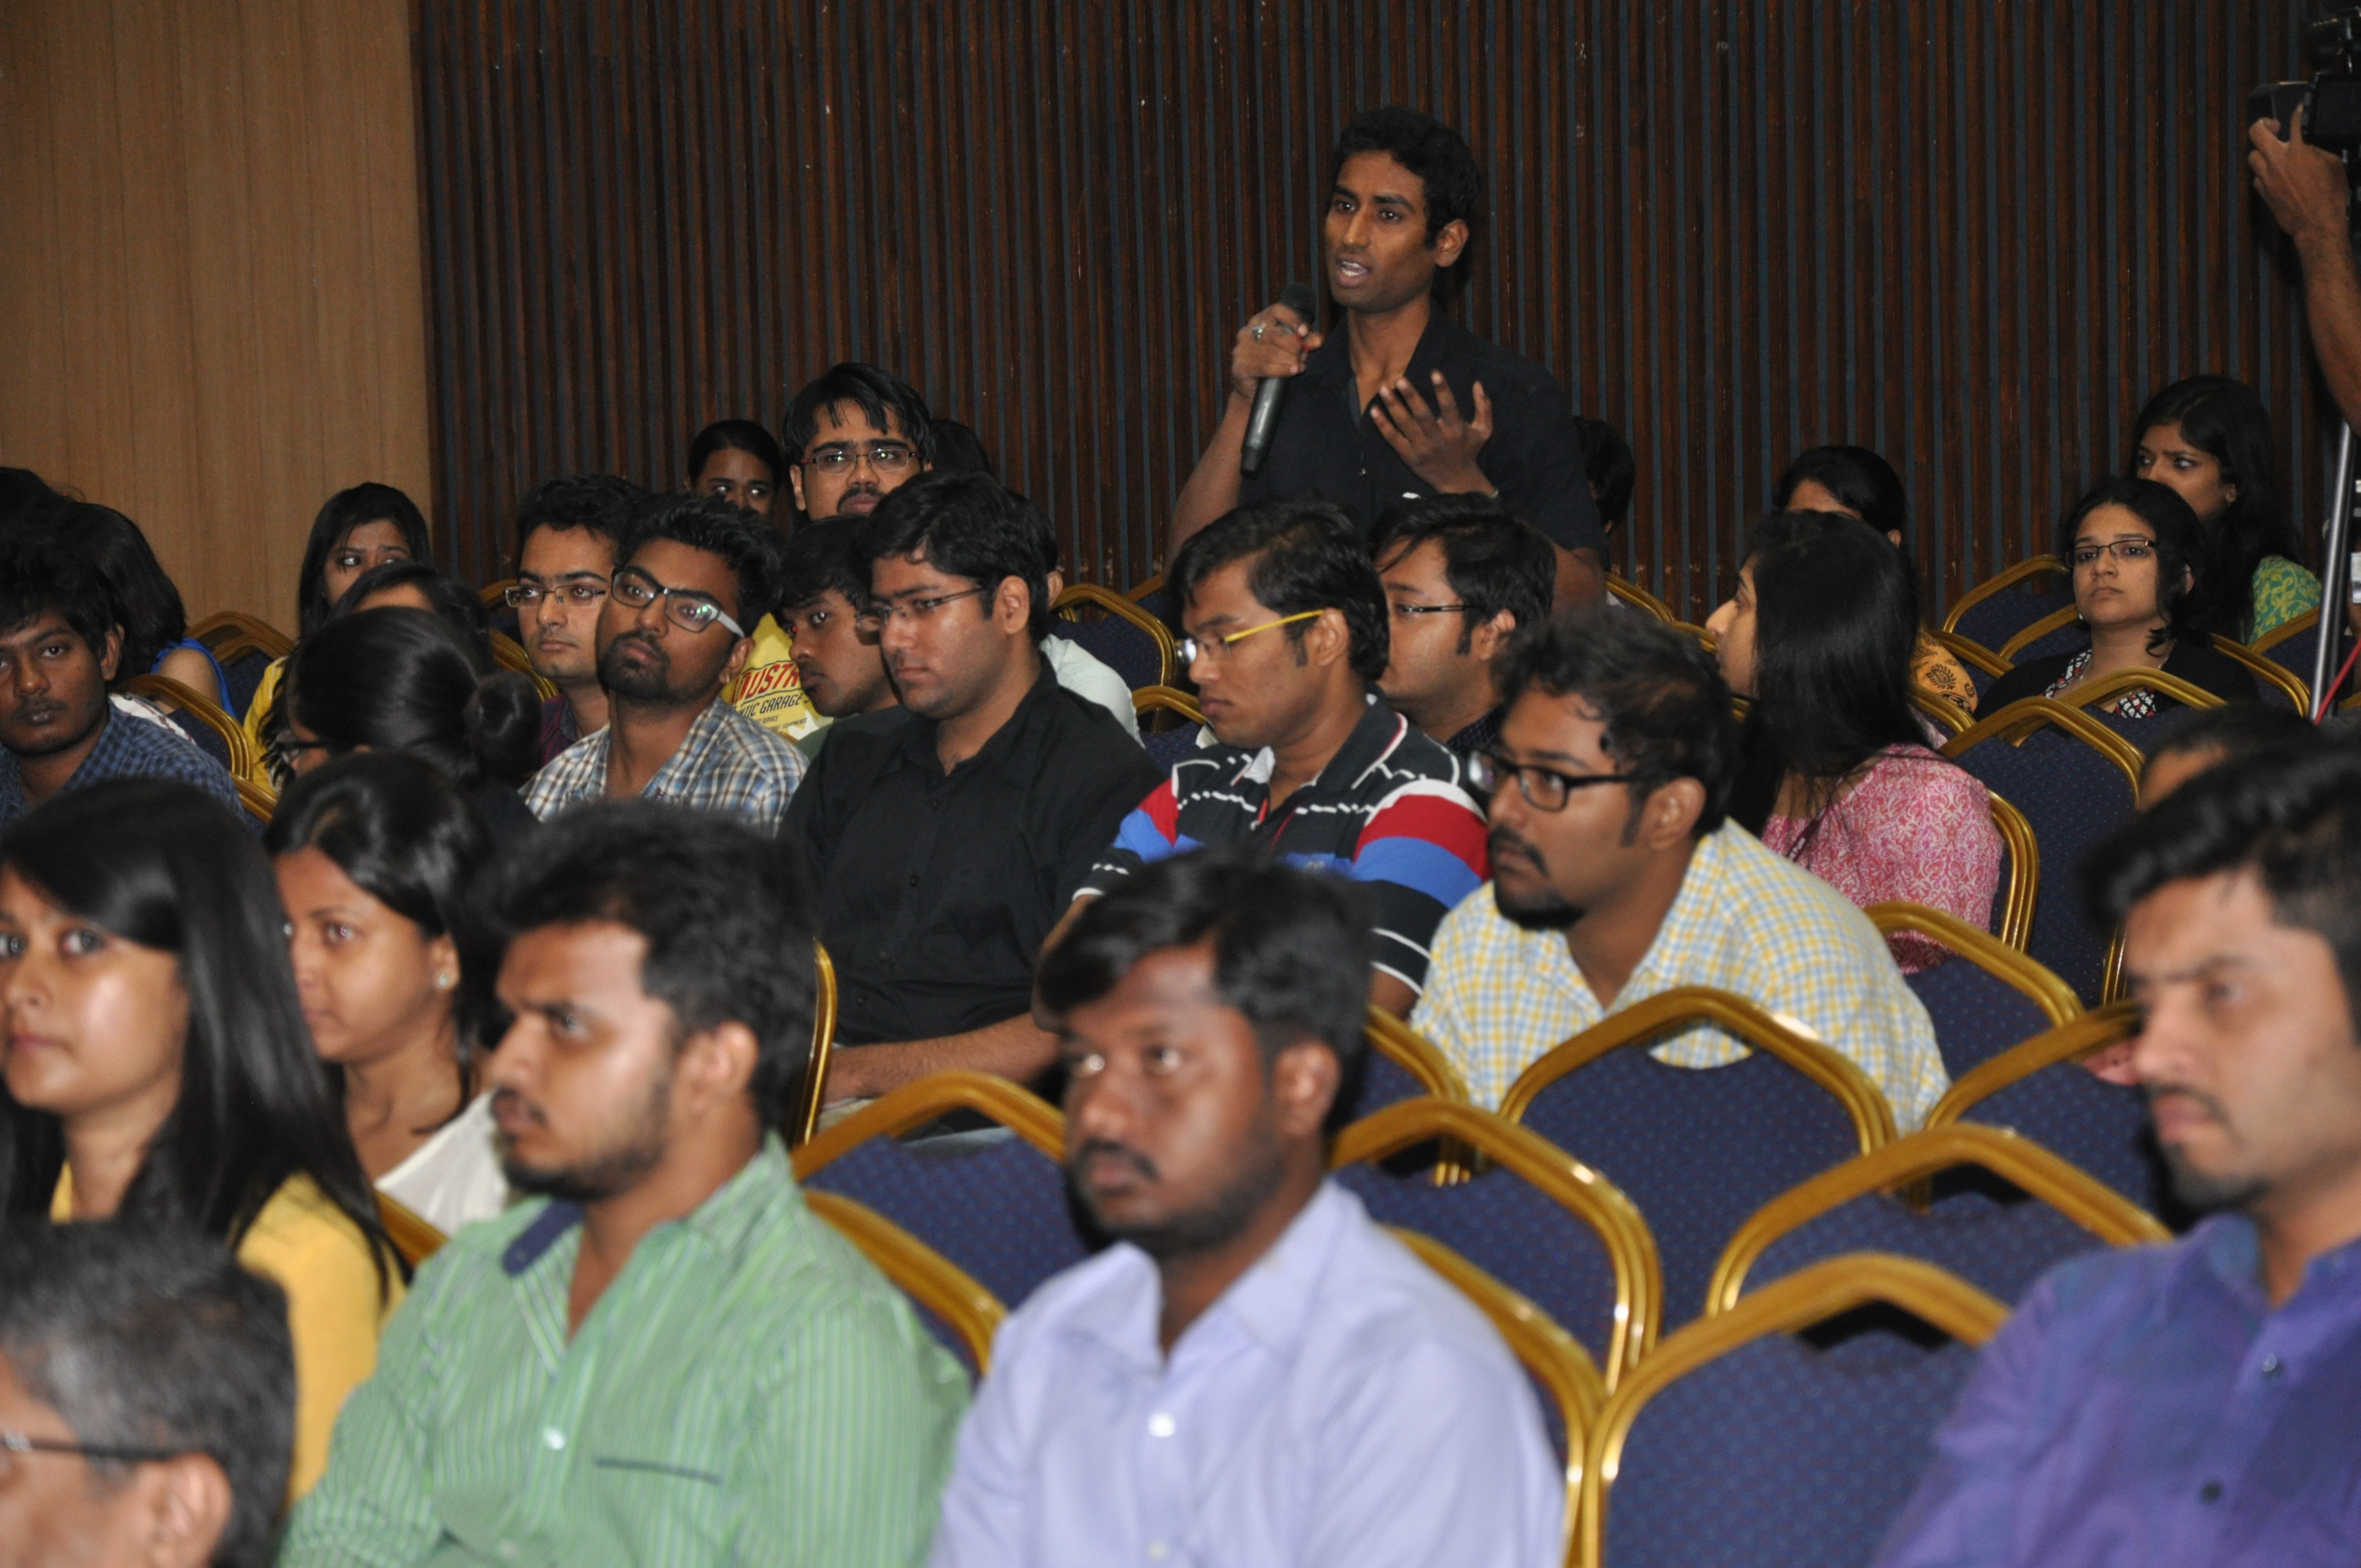 Seminar on “Thinking Social” at Pune – 3 October 2015